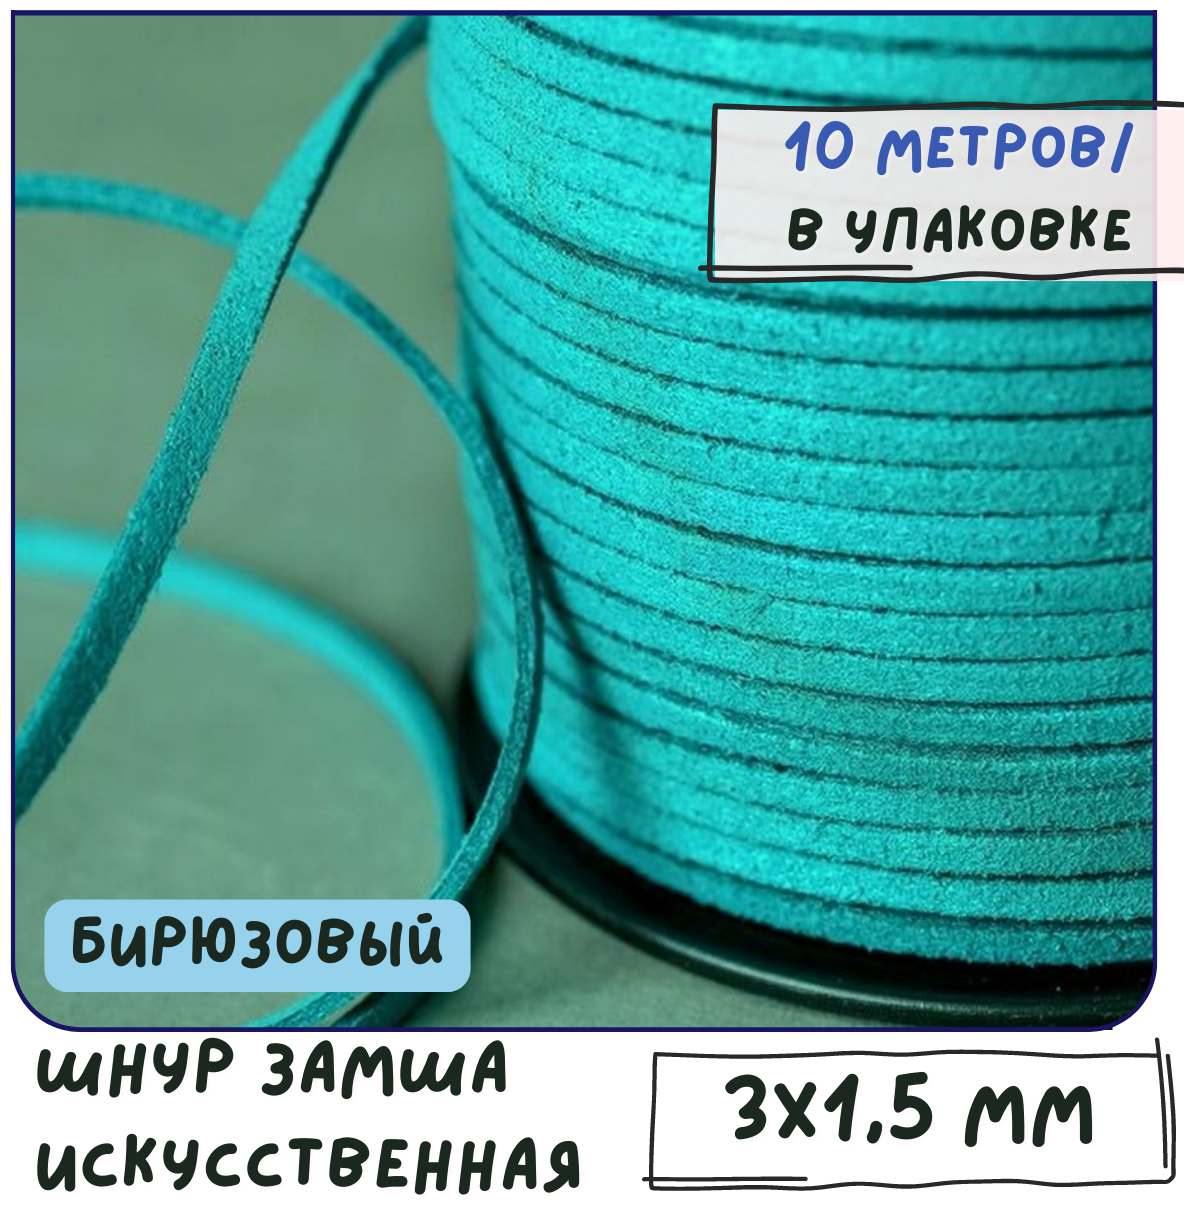 Шнур из исск. замши 3х1.5 мм 10 метров для шитья / рукоделия / браслетов, цвет бирюзовый